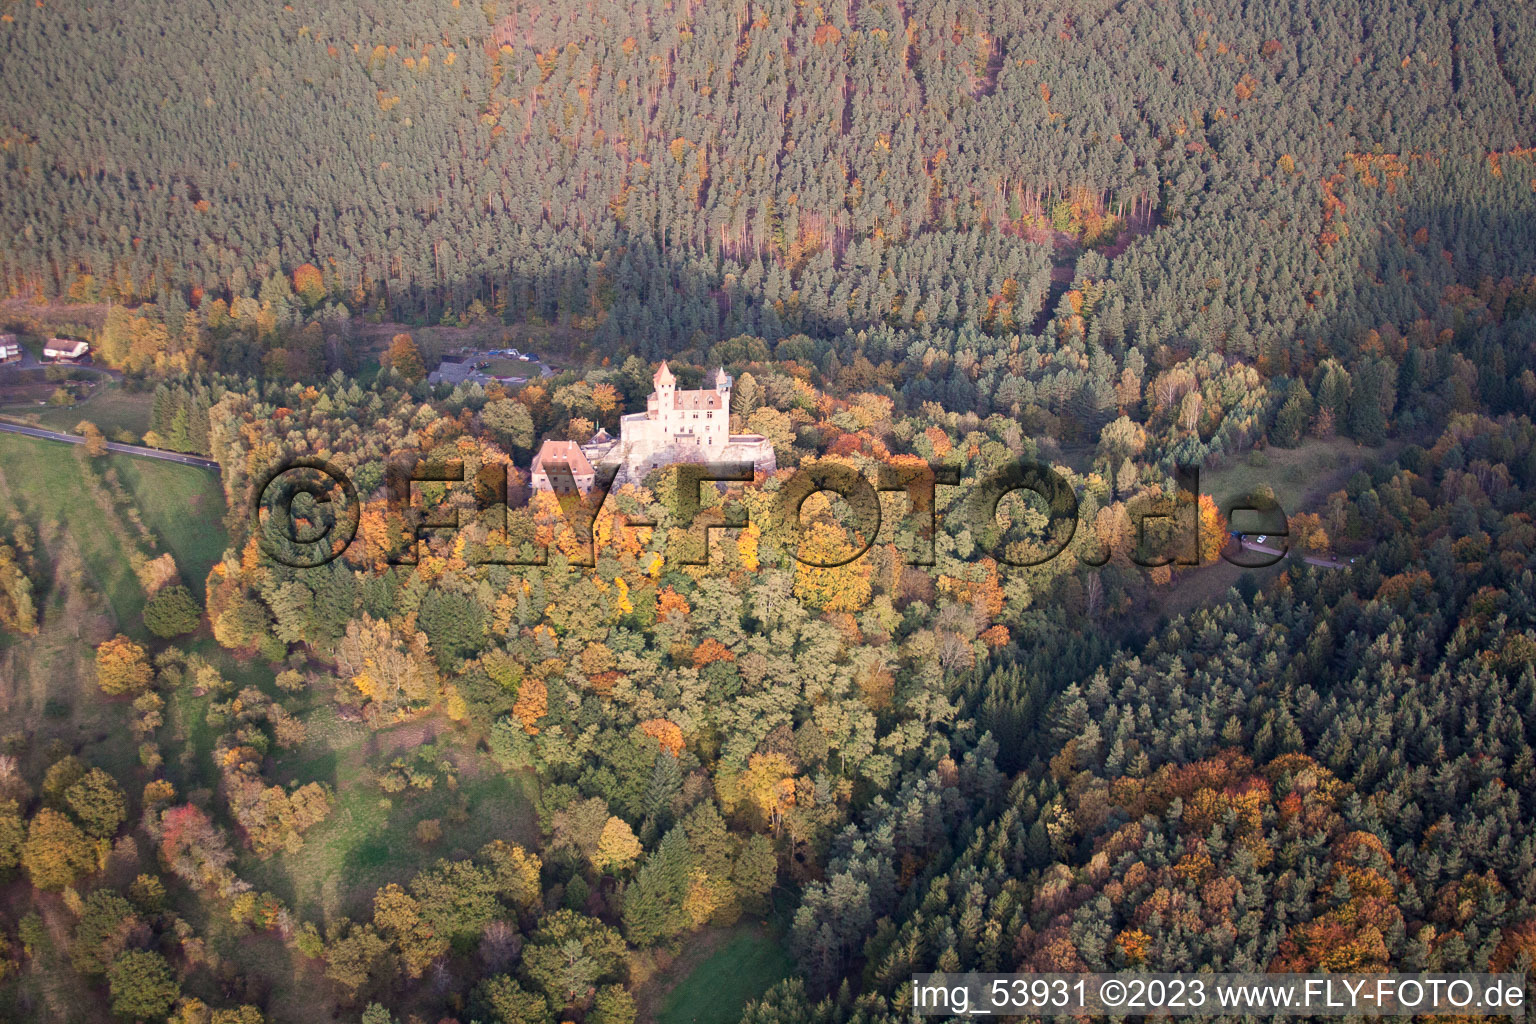 Luftaufnahme von Burg Berwartstein in Erlenbach bei Dahn im Bundesland Rheinland-Pfalz, Deutschland